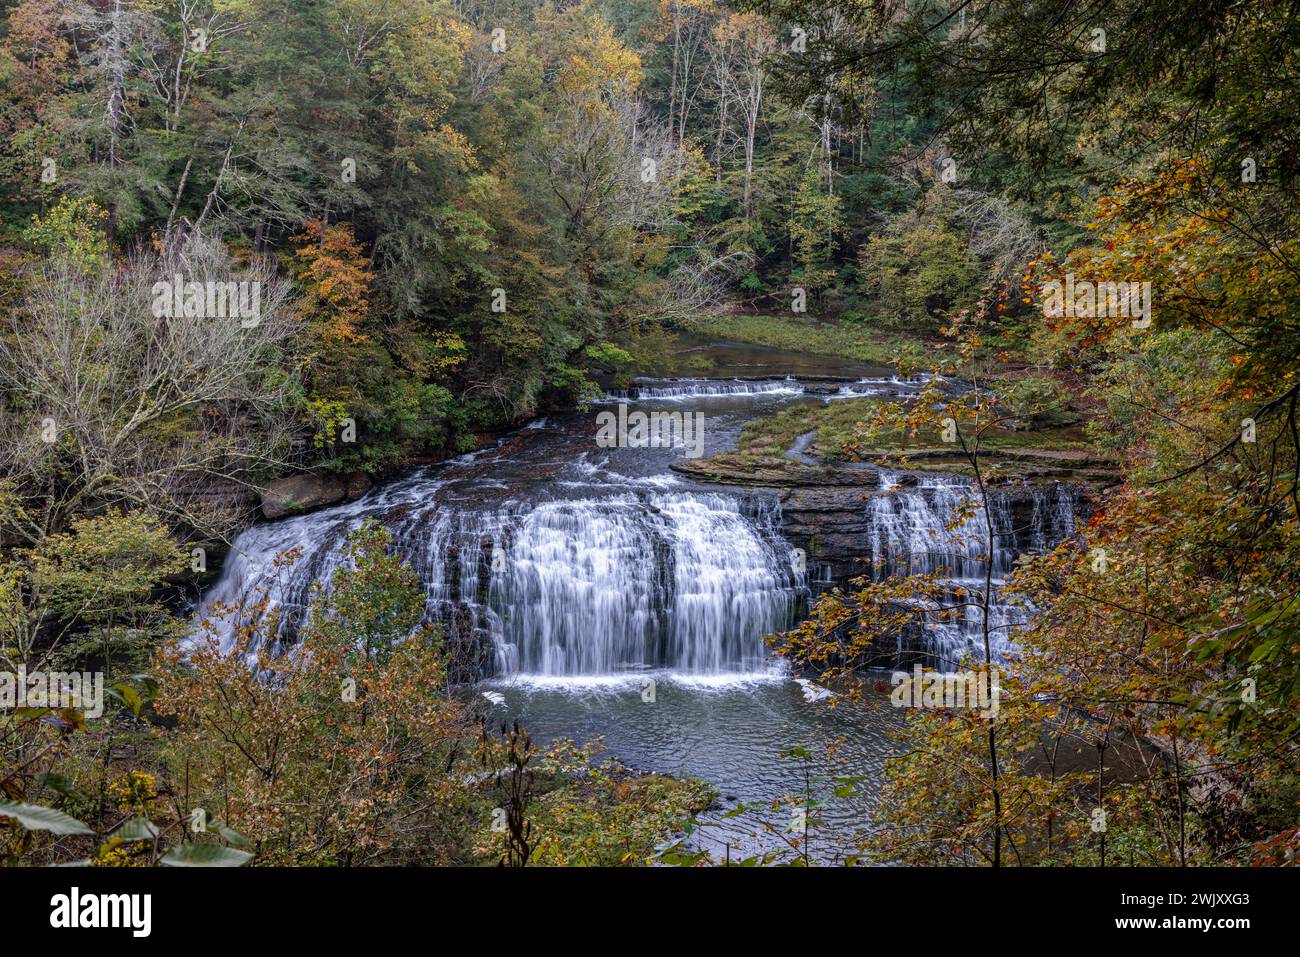 Middle Falls (Big Falls) dans Burgess Falls State Park près de Cookeville, Tennessee Banque D'Images